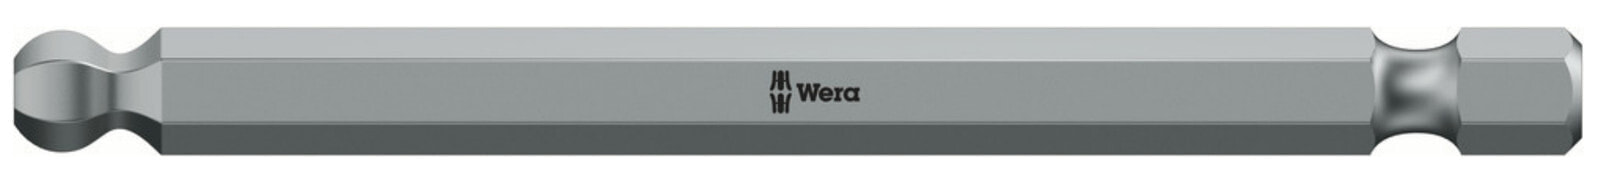 Wera 05059681001 - Hex (metric) - 4 mm - 89 mm - 21 g - Czech Republic